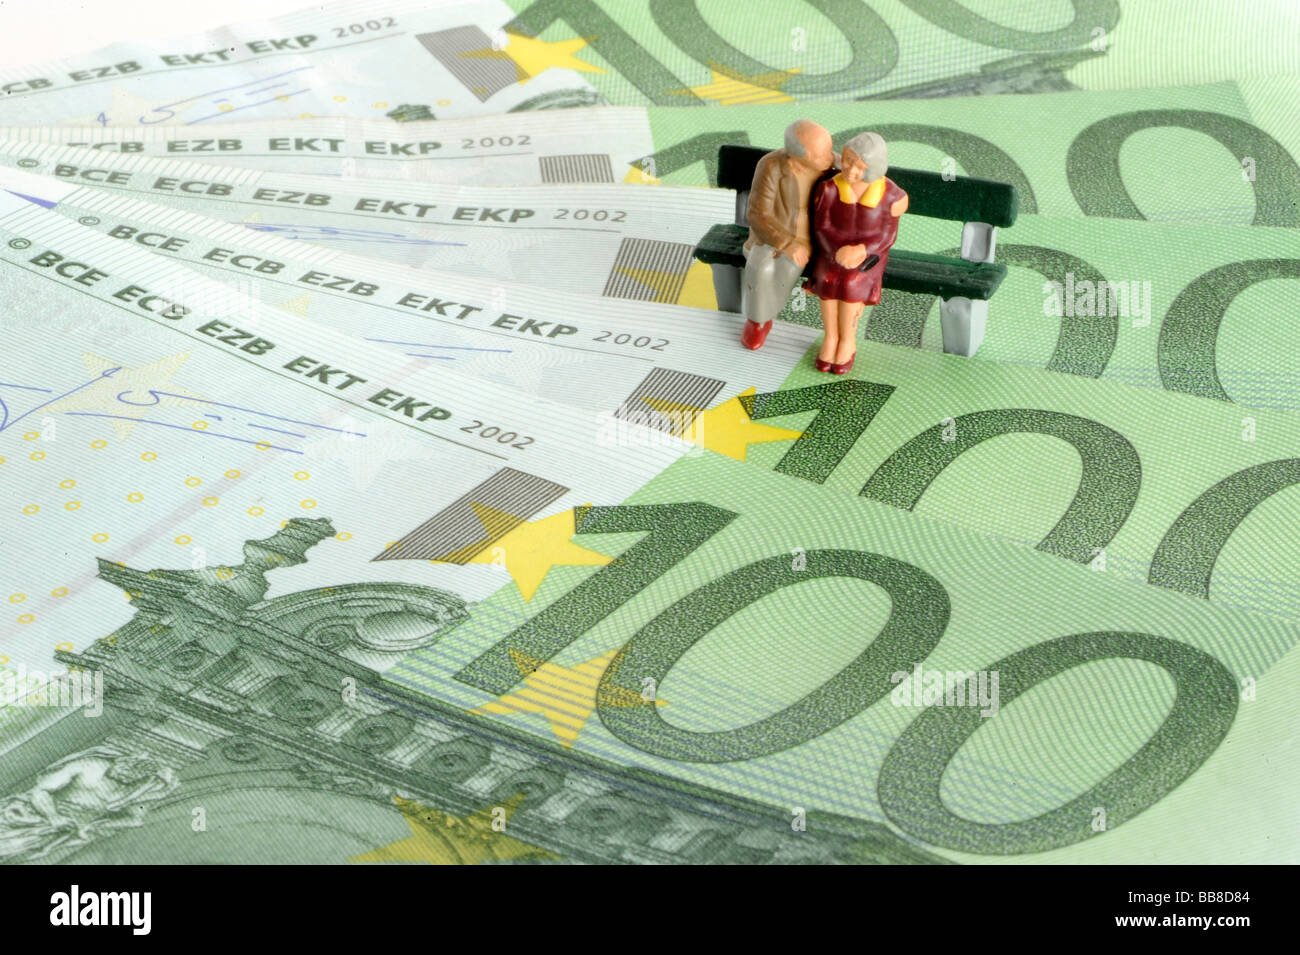 Les chiffres retraités miniature assis sur un banc sur les billets en euros, image symbolique de la retraite, de la pension Banque D'Images